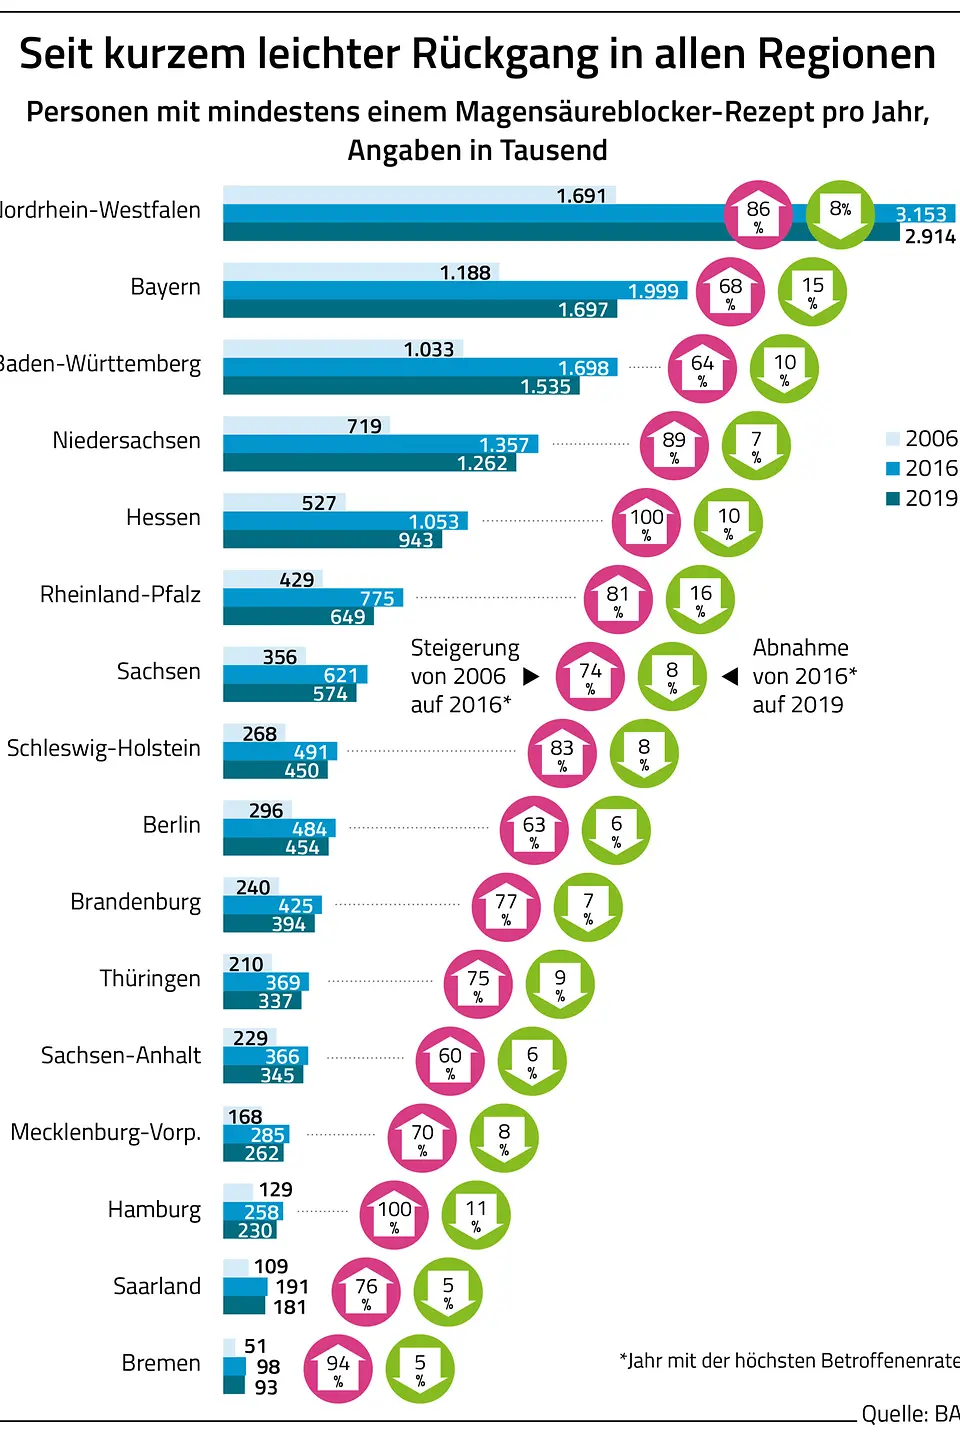 Die Grafik zeigt die Anzahl der Personen mit mindestens einem Magensäureblocker-Rezept pro Jahr pro Bundesland.